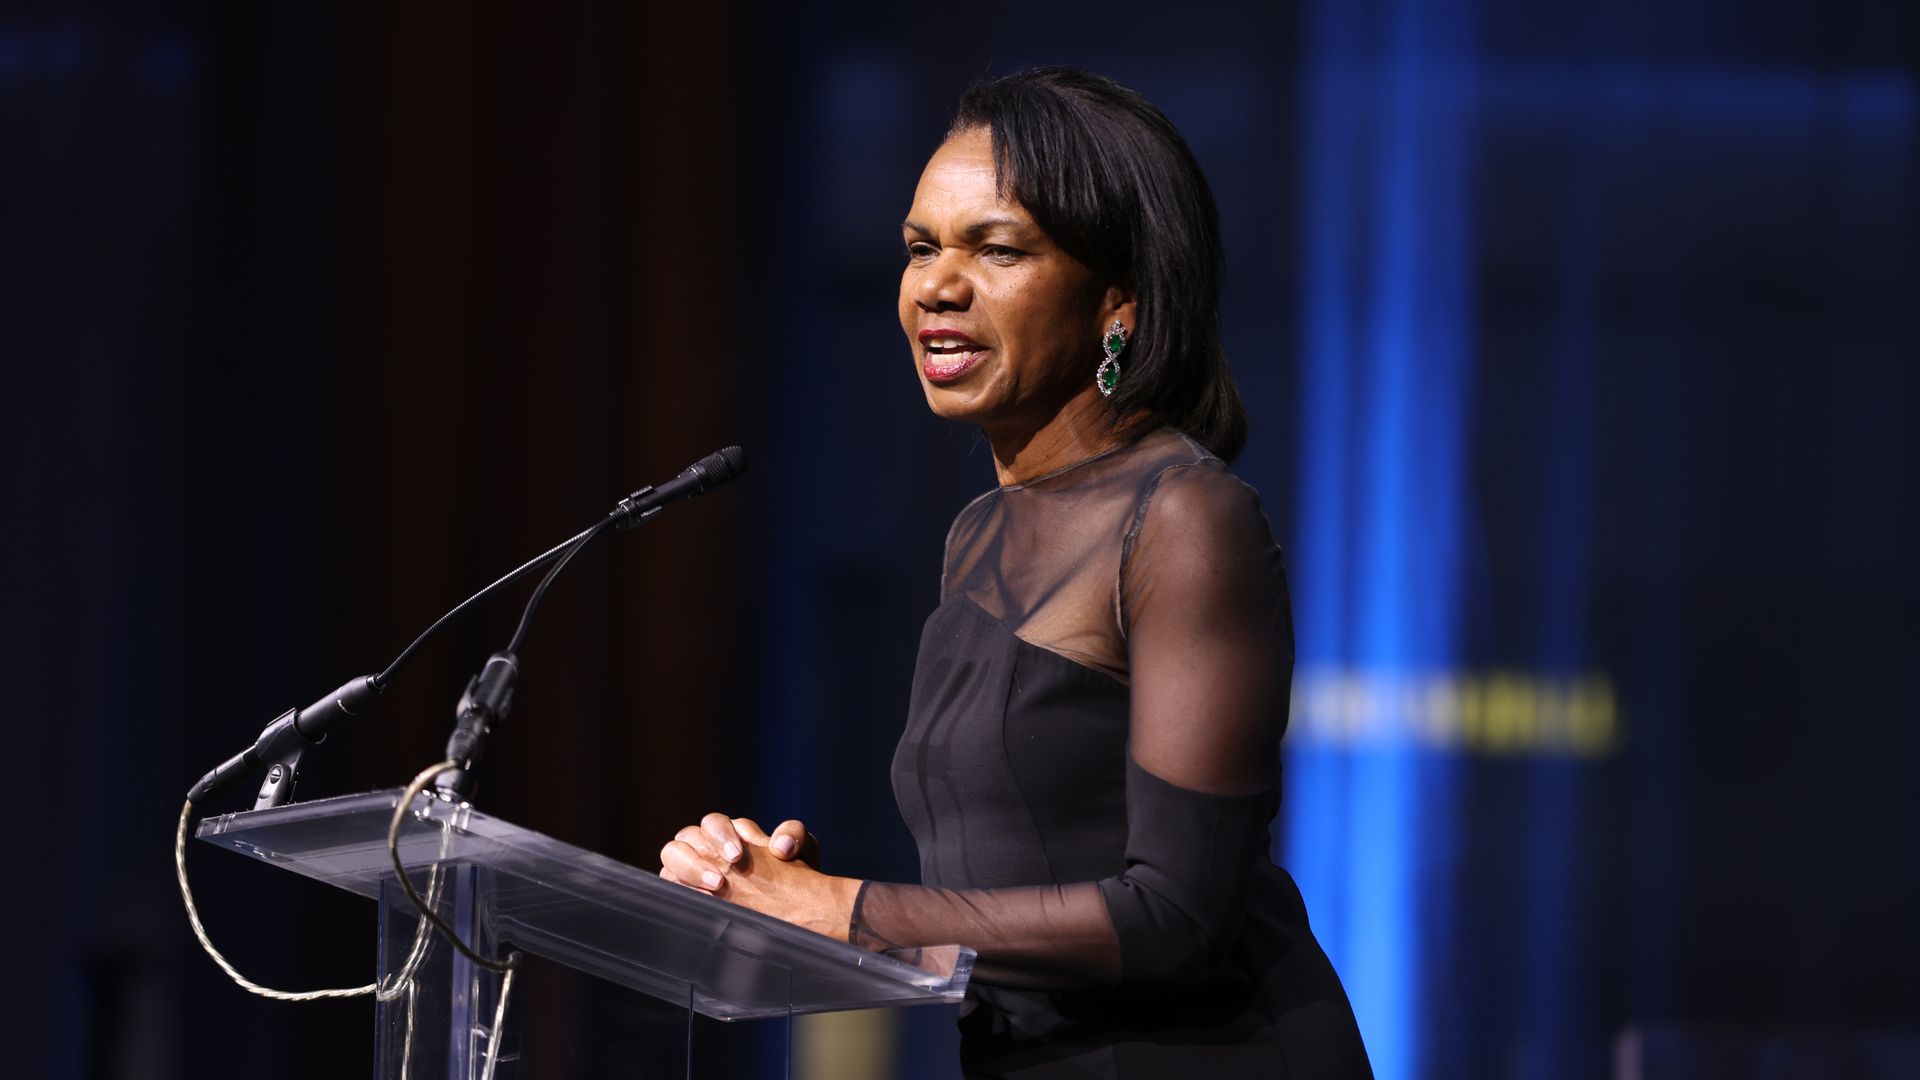 Condoleezza Rice speaks at a podium.